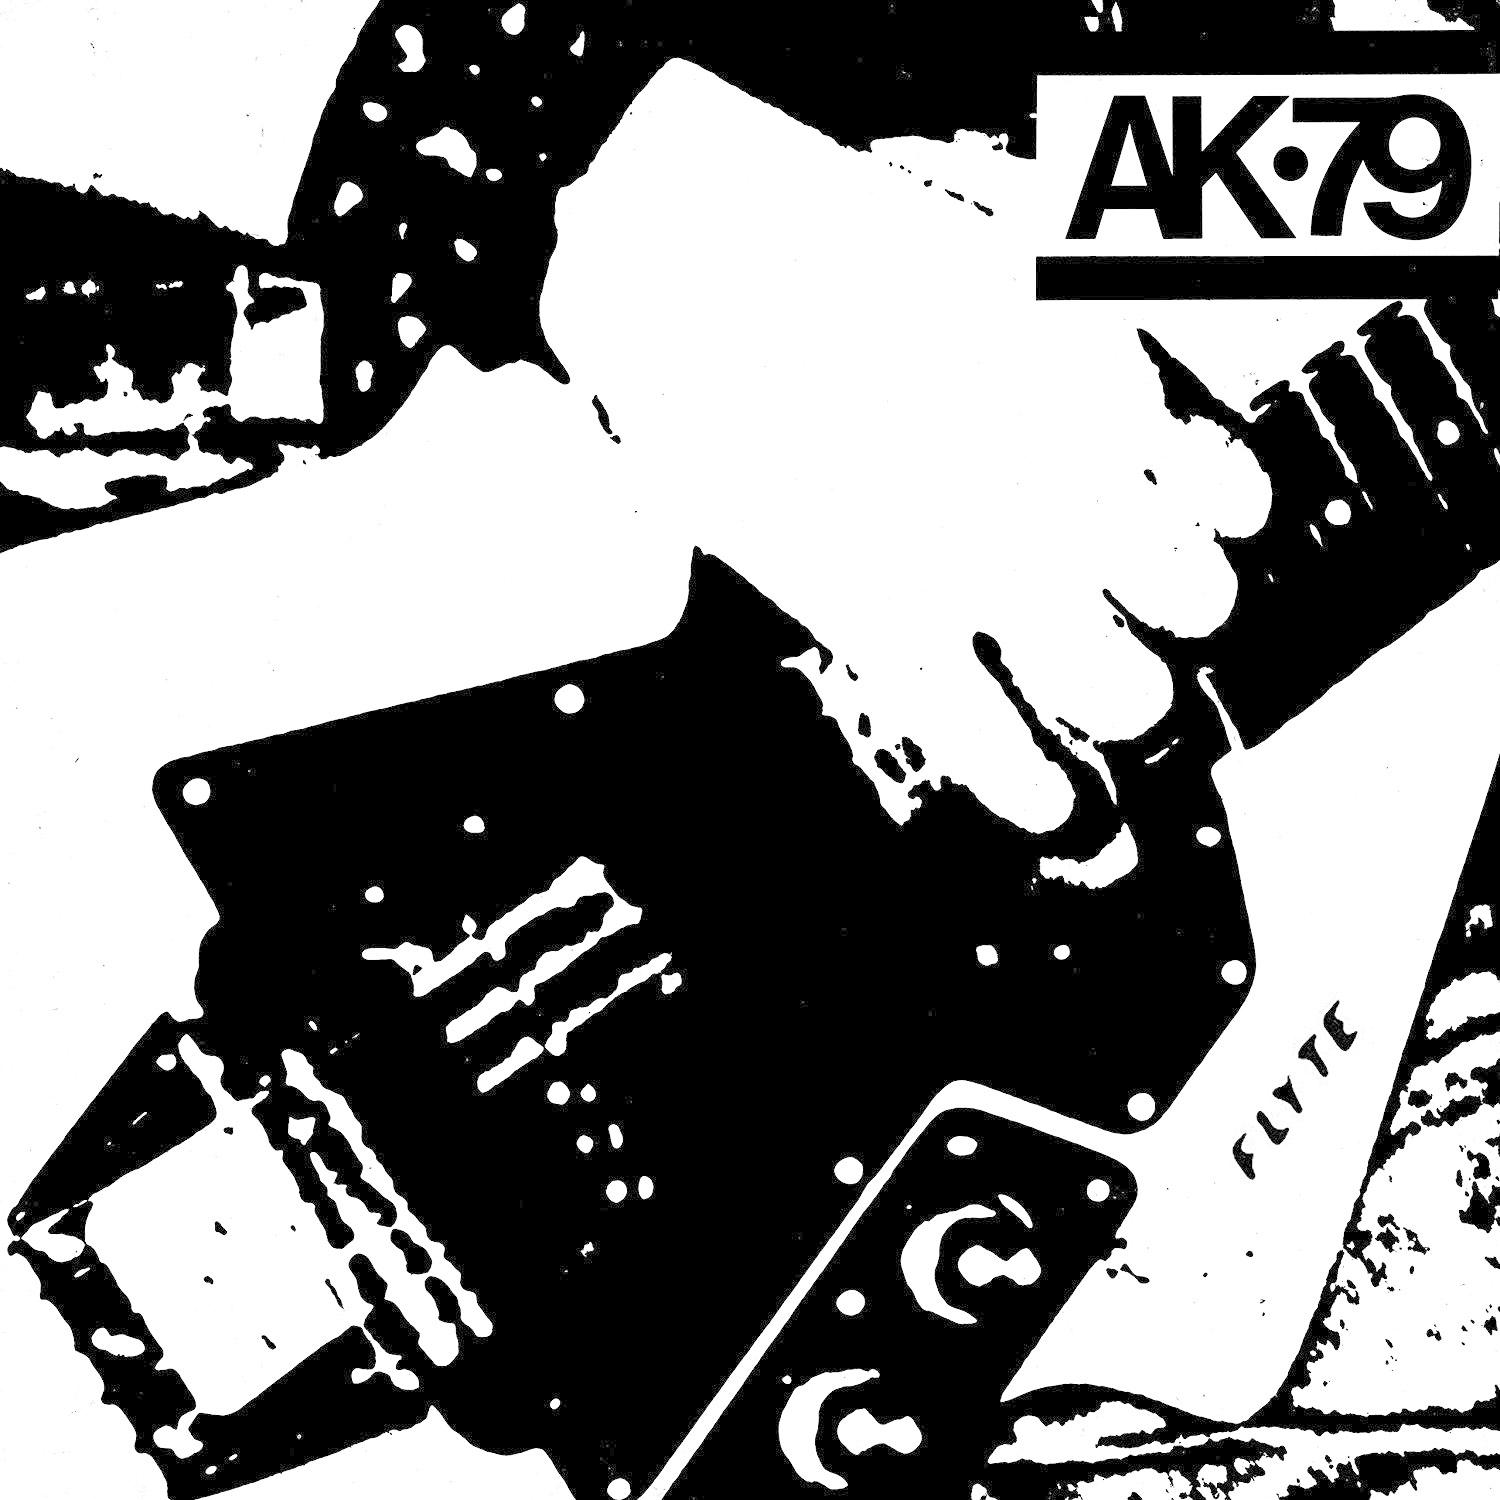 VARIOUS - Ak79 (Vinyl) -